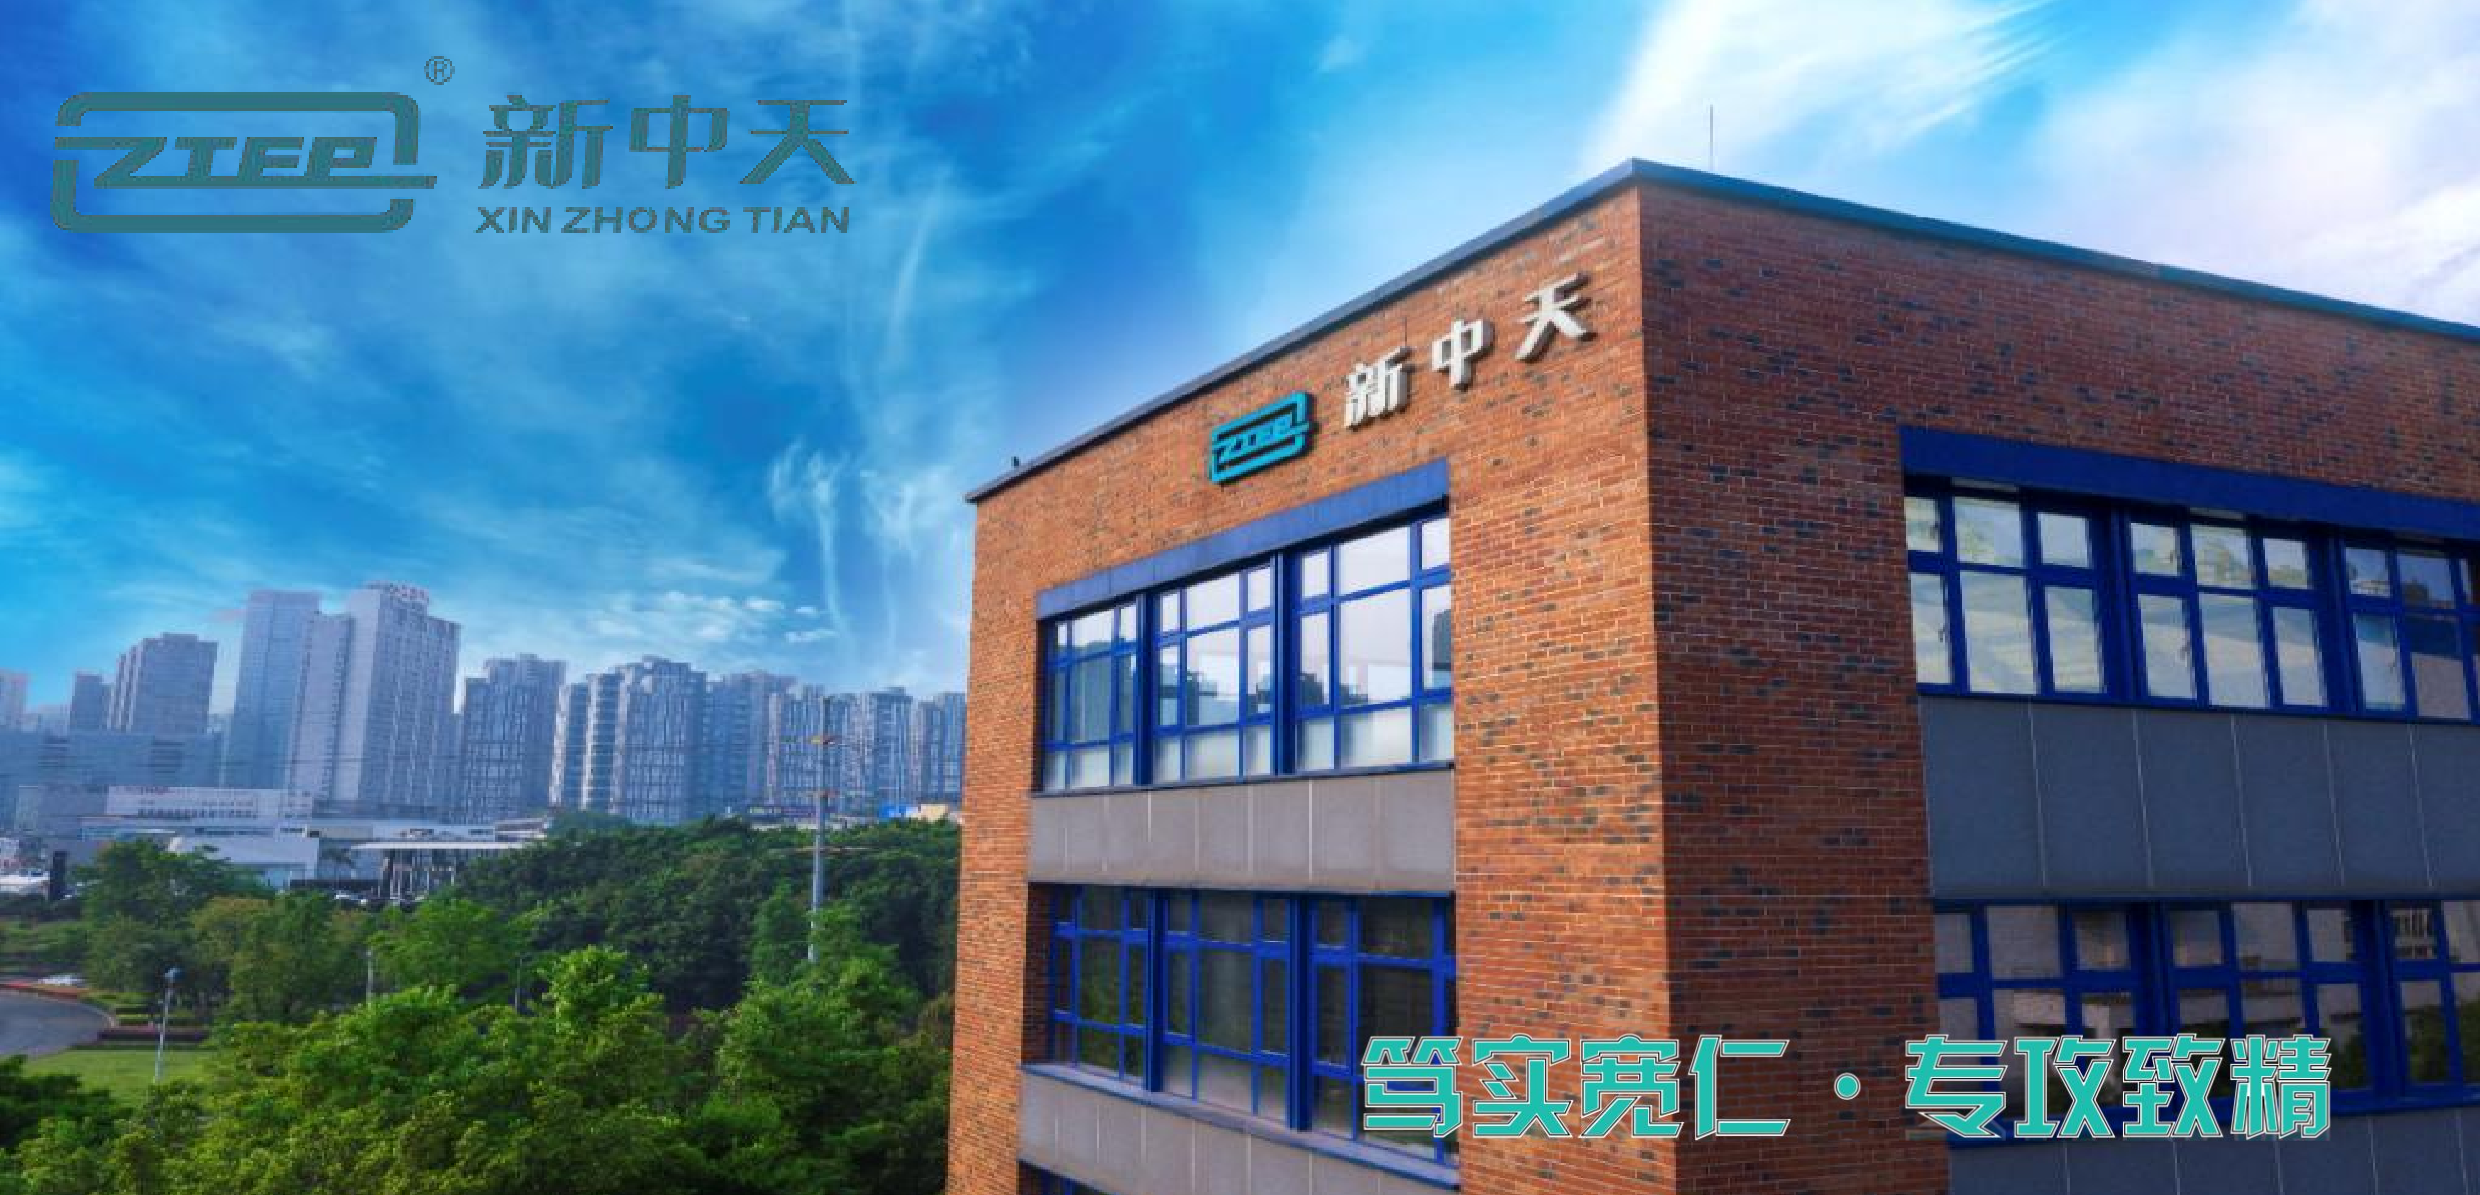 重庆三峰环境集团股份有限公司